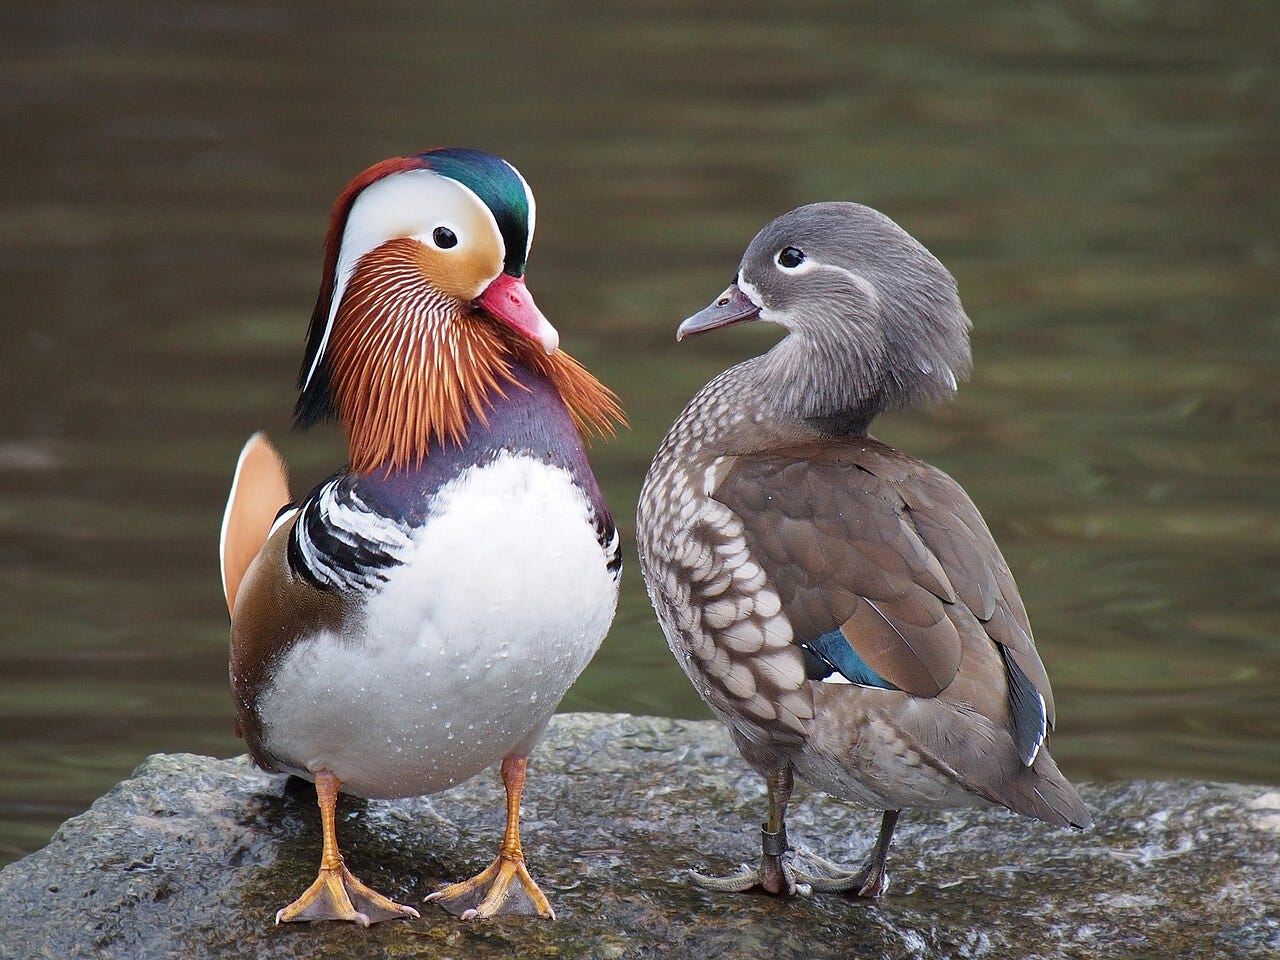 mandarin duck pair standing on a rock near water